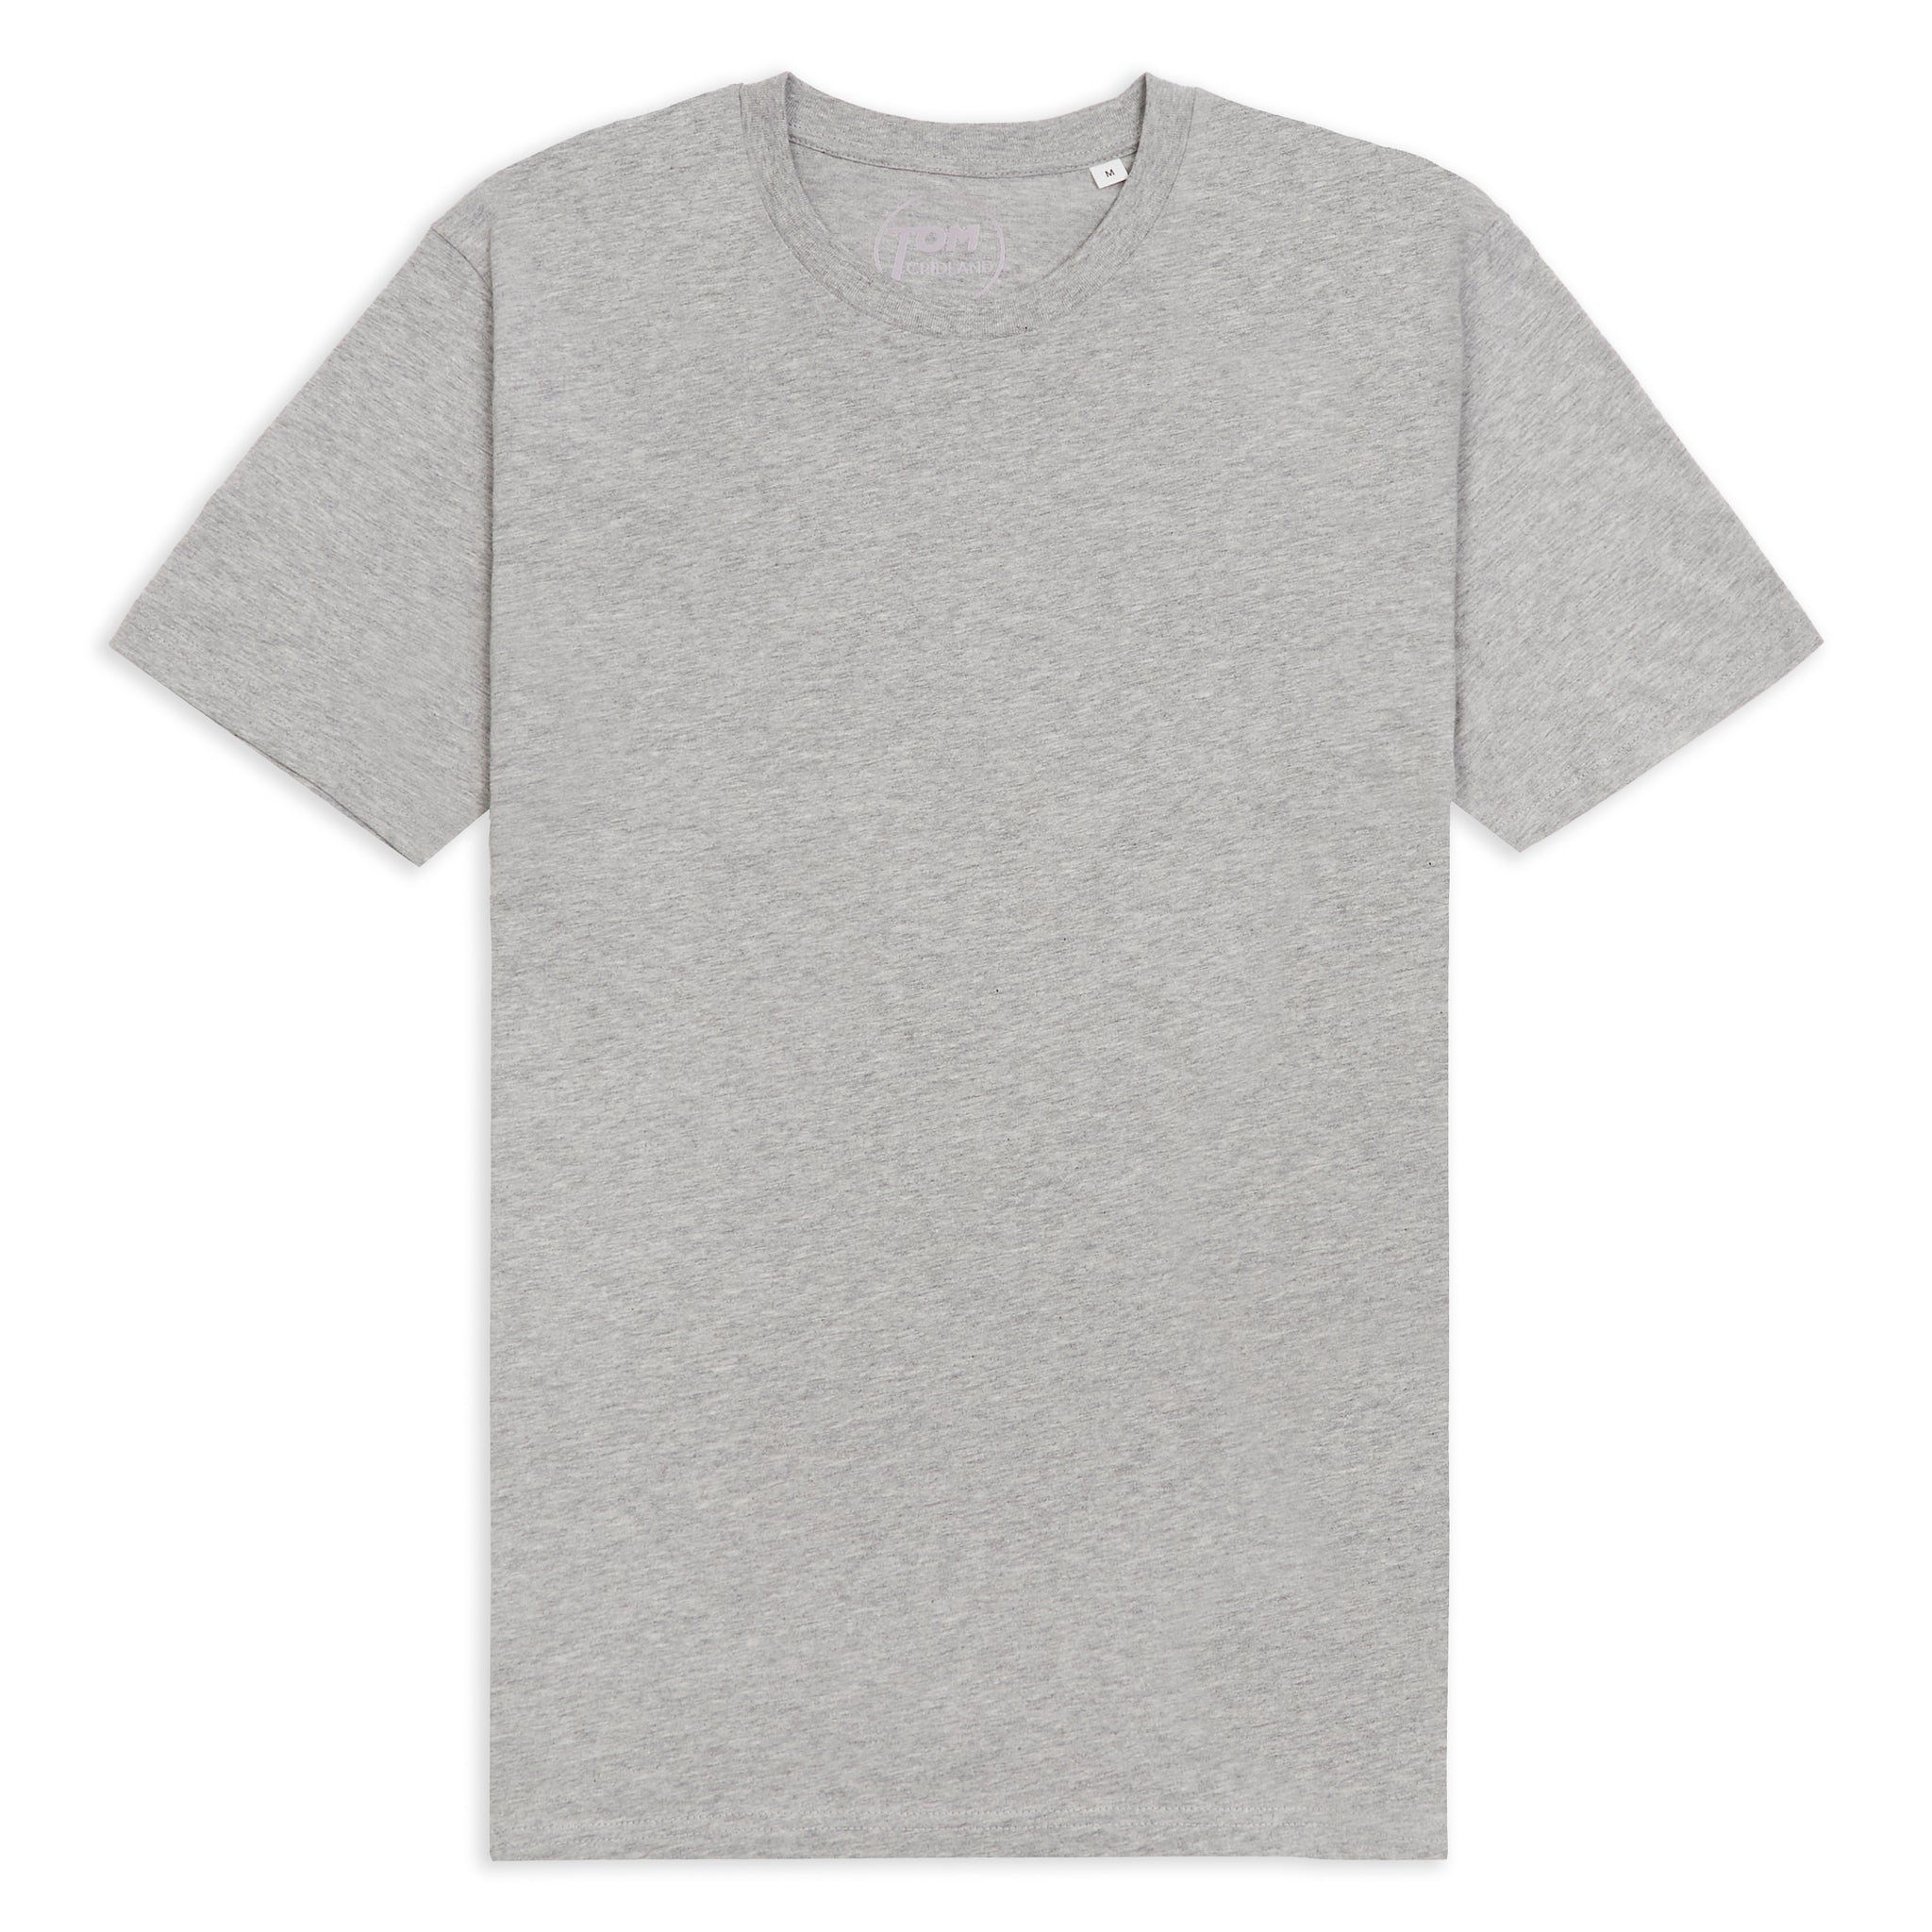 Grey Seal 30 Year™ T-Shirt